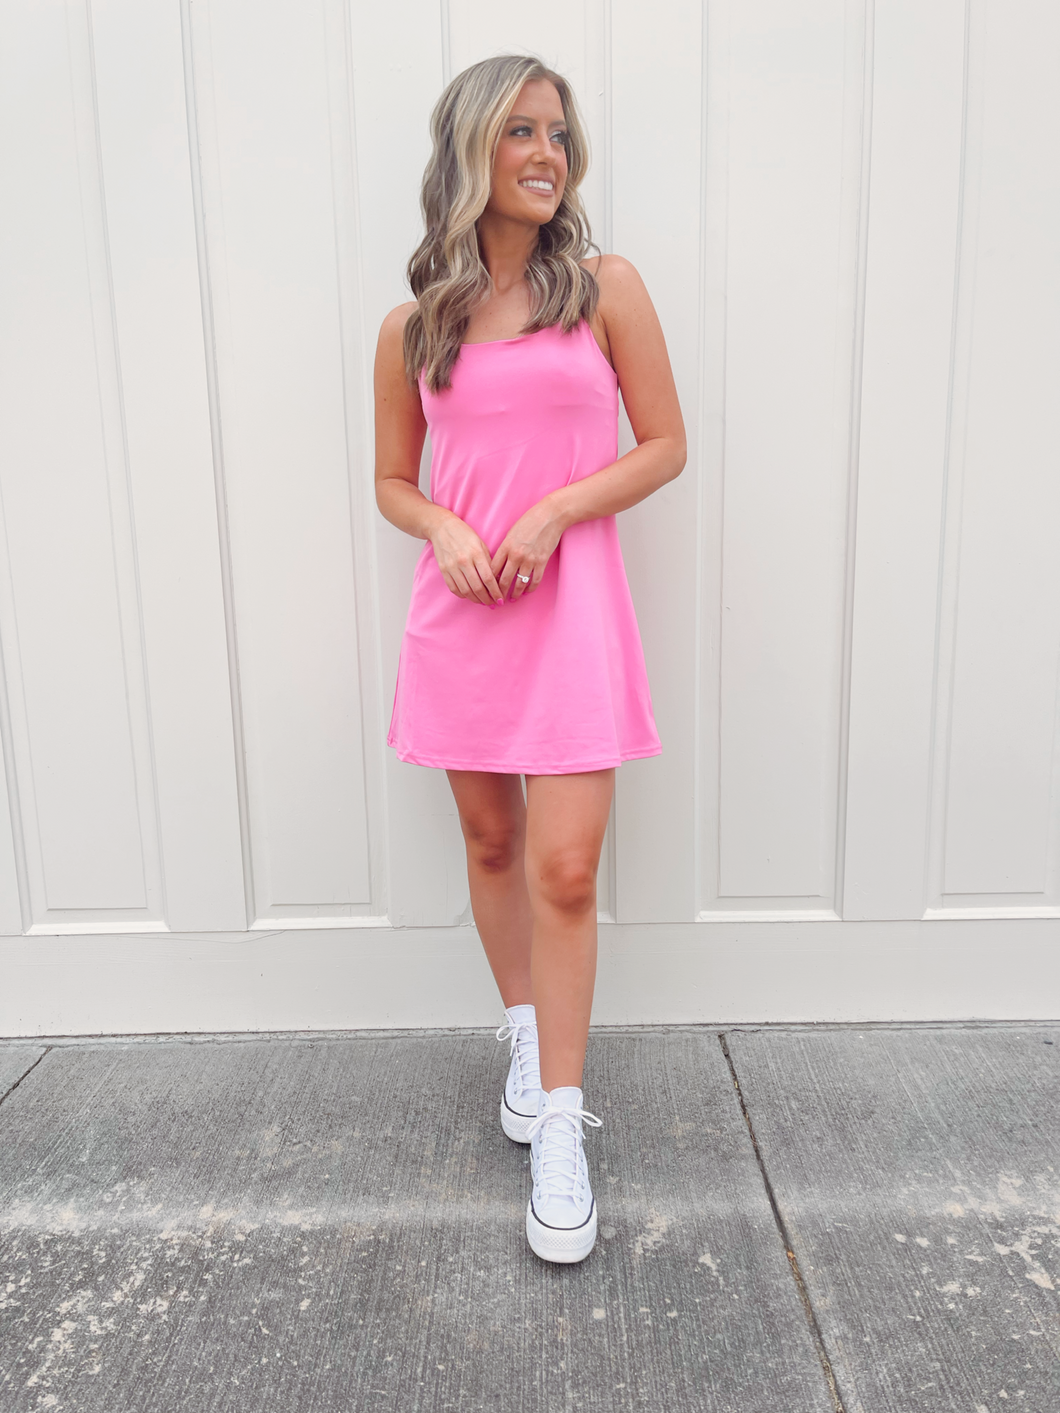 Hot Girl Walk Tennis Dress - Pink